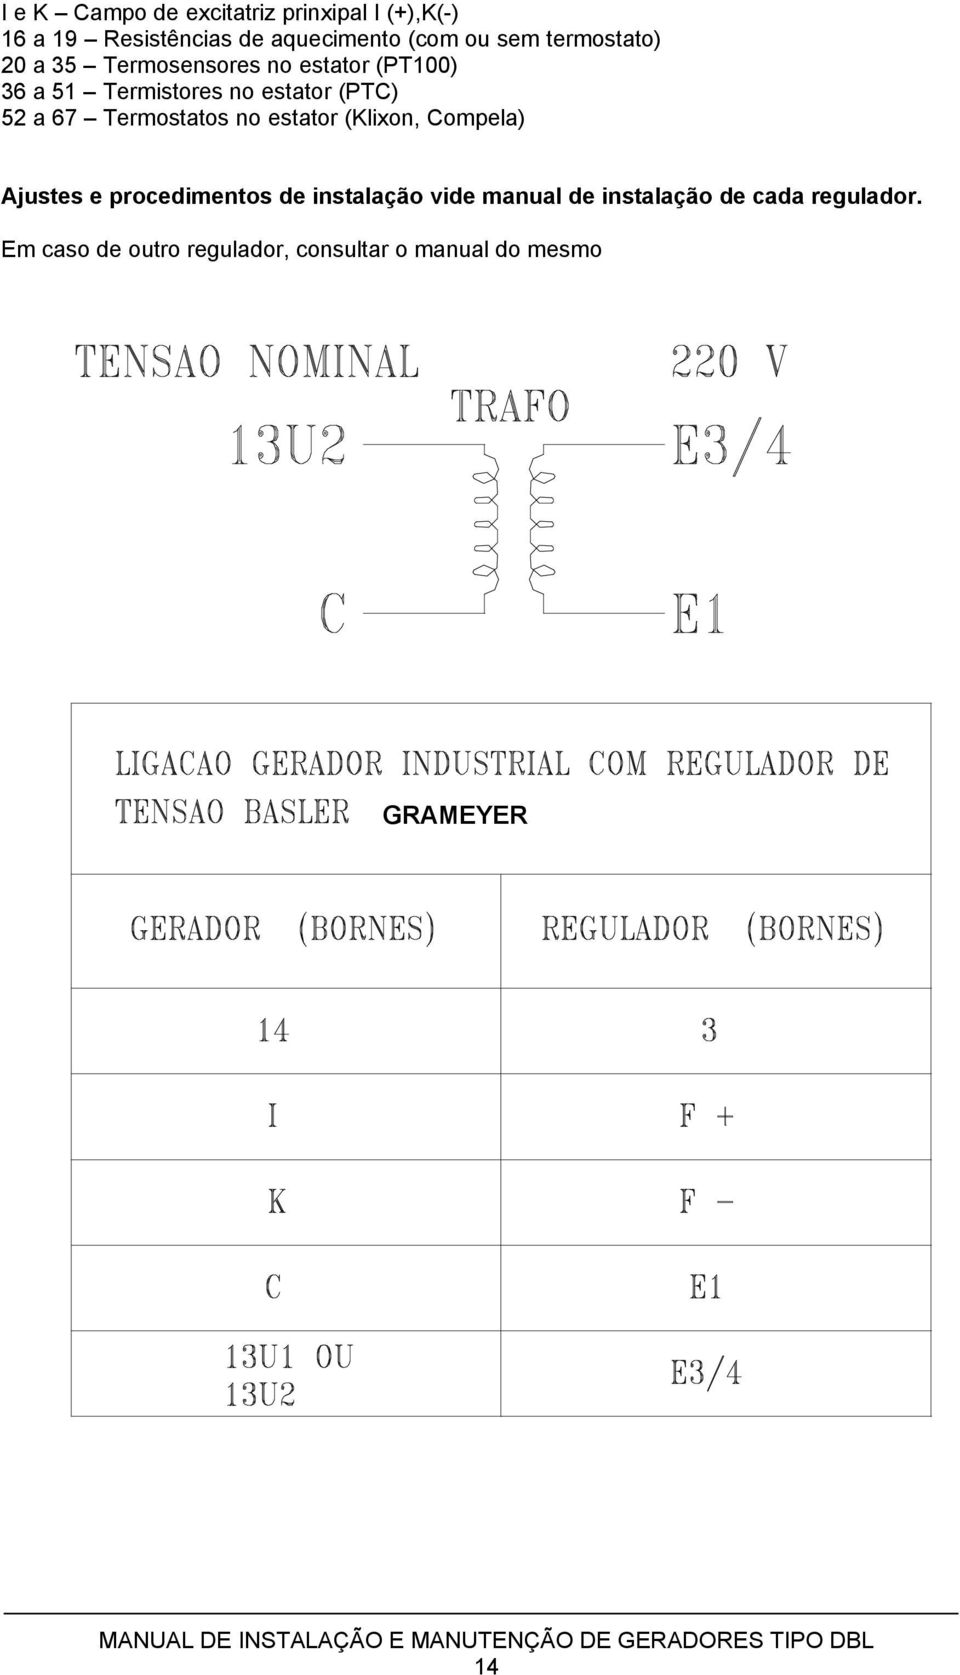 67 Termostatos no estator (Klixon, Compela) Ajustes e procedimentos de instalação vide manual